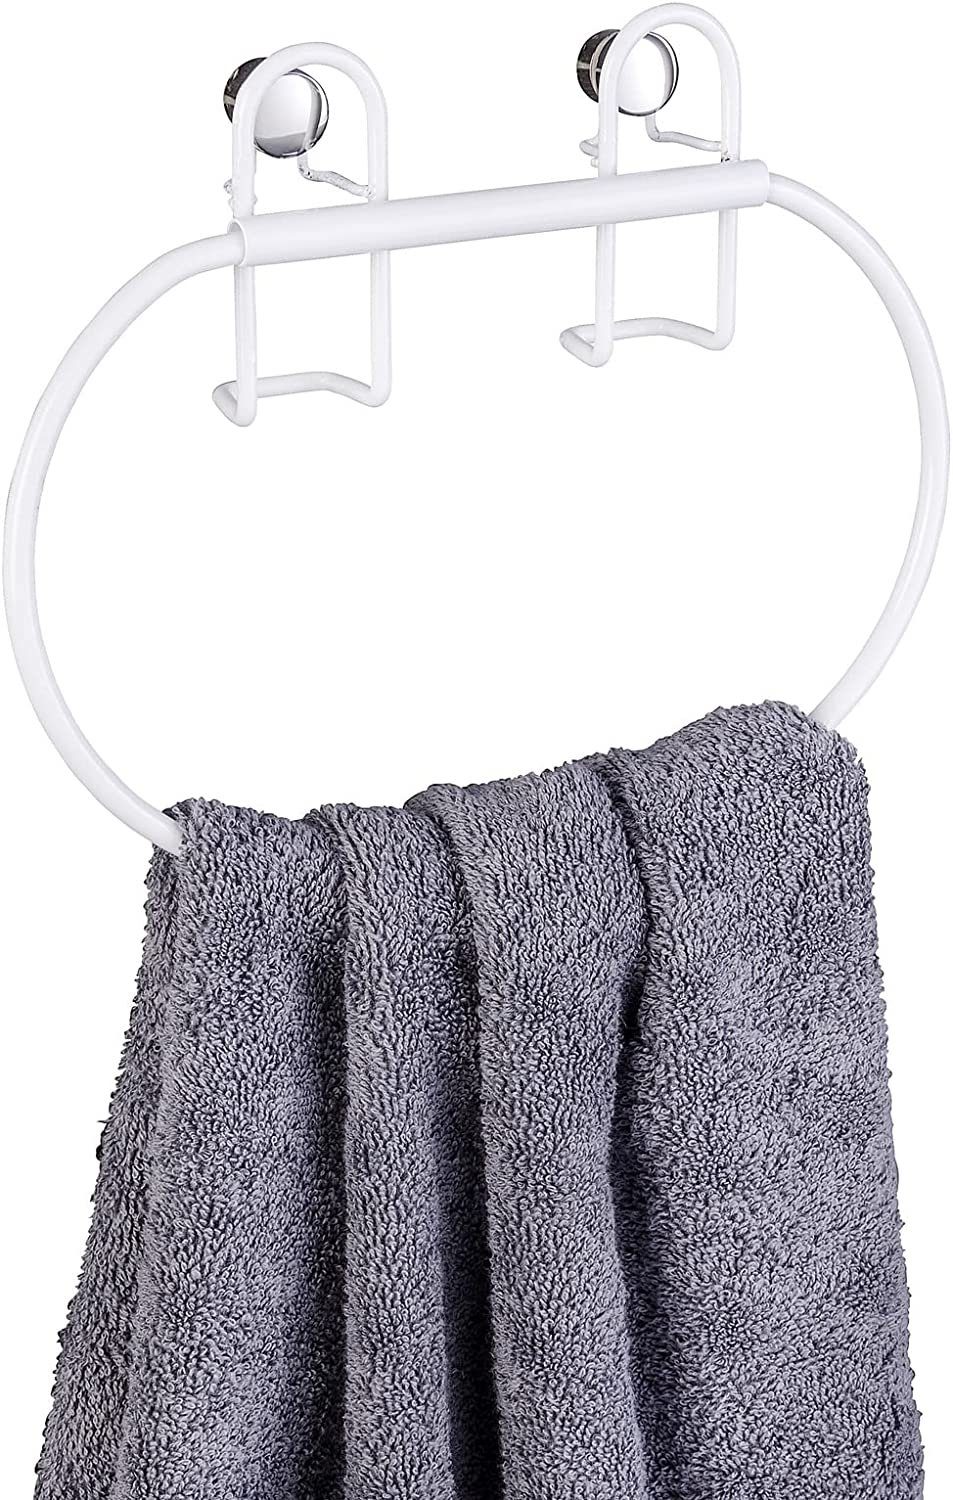 Handtuchring Rostschutz weiß in WENKO mit Plus, Classic hochwertigem Handtuchhalter